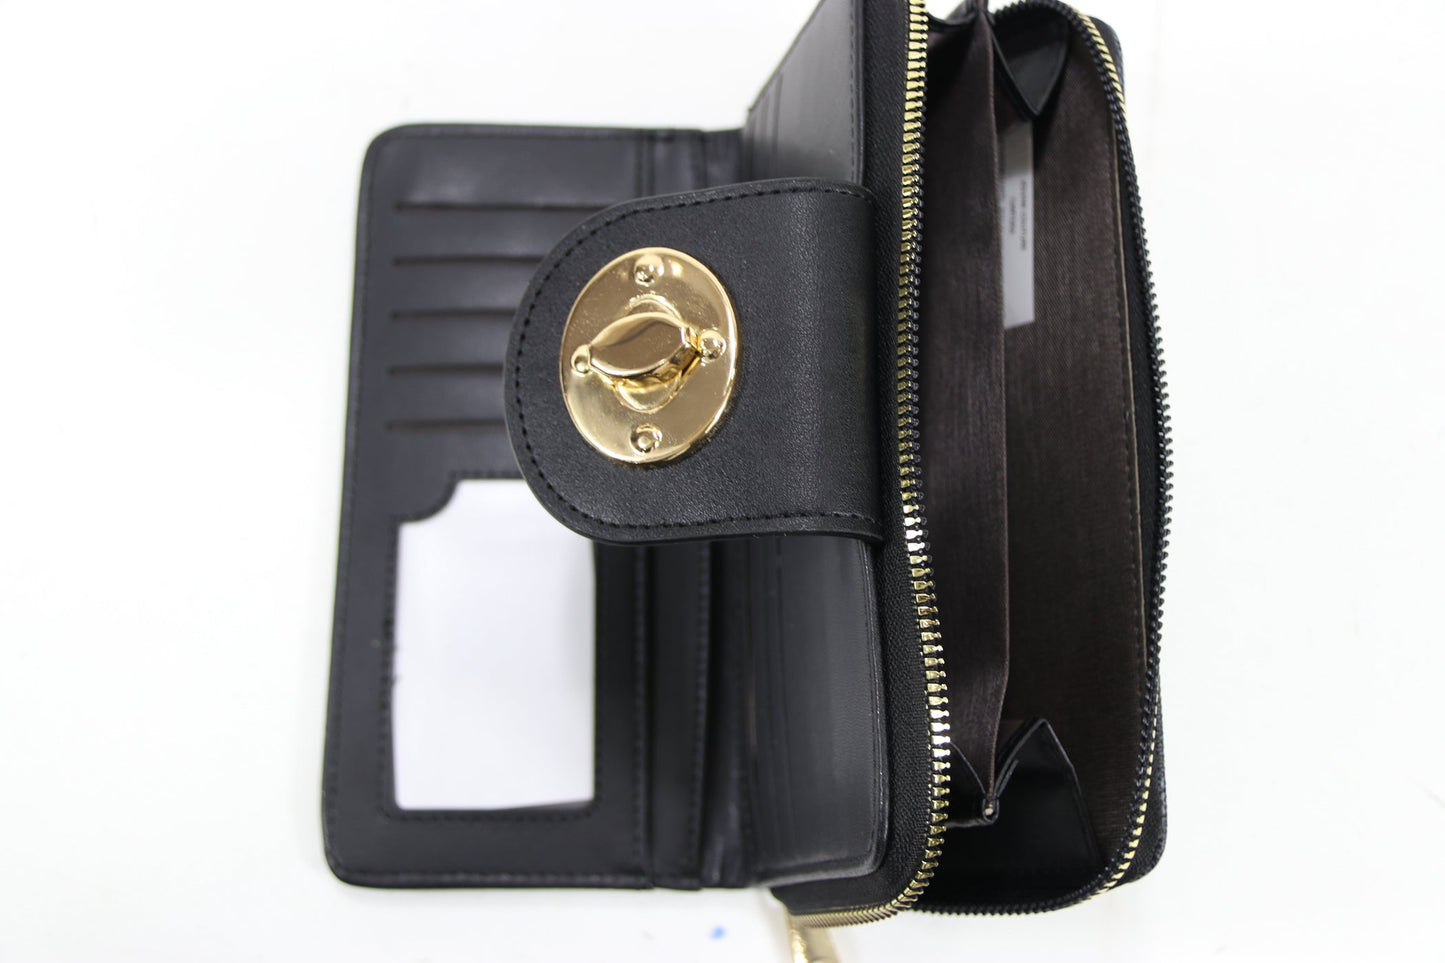 Wallet W1542